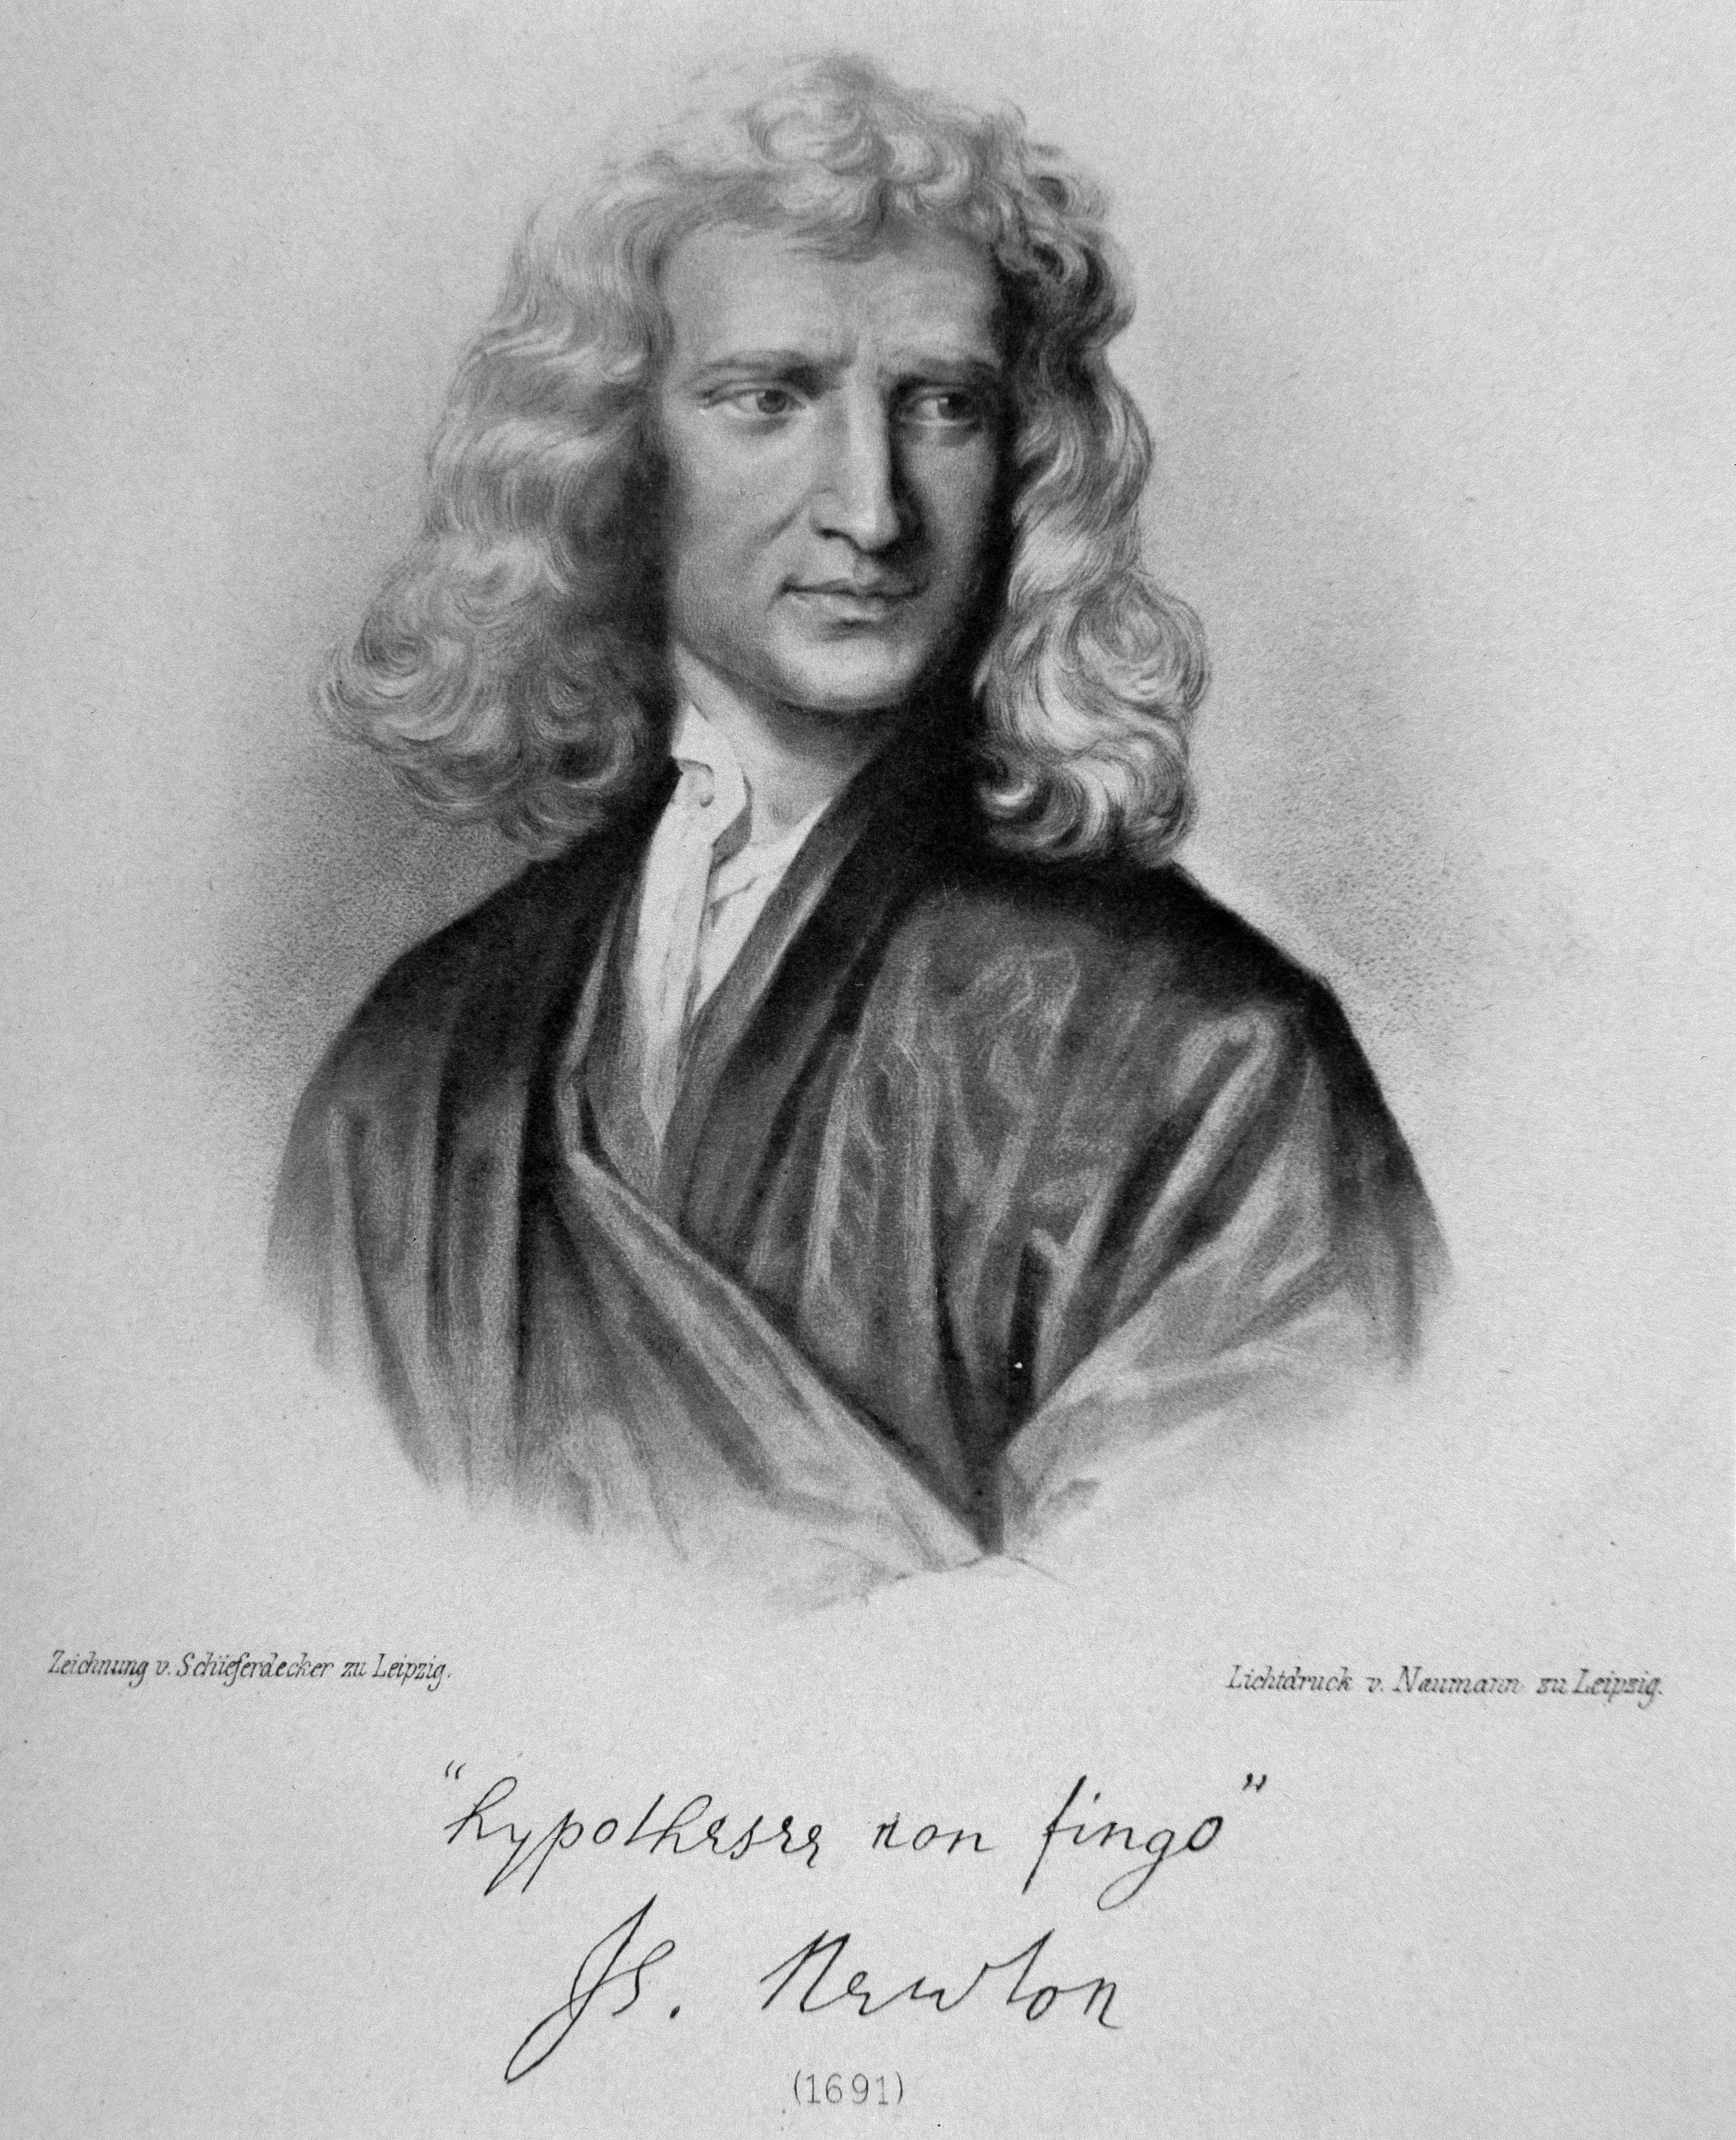 Vida y misterios de Isaac Newton: de la teoría de la manzana a la de que  murió virgen y era homosexual | Famosos